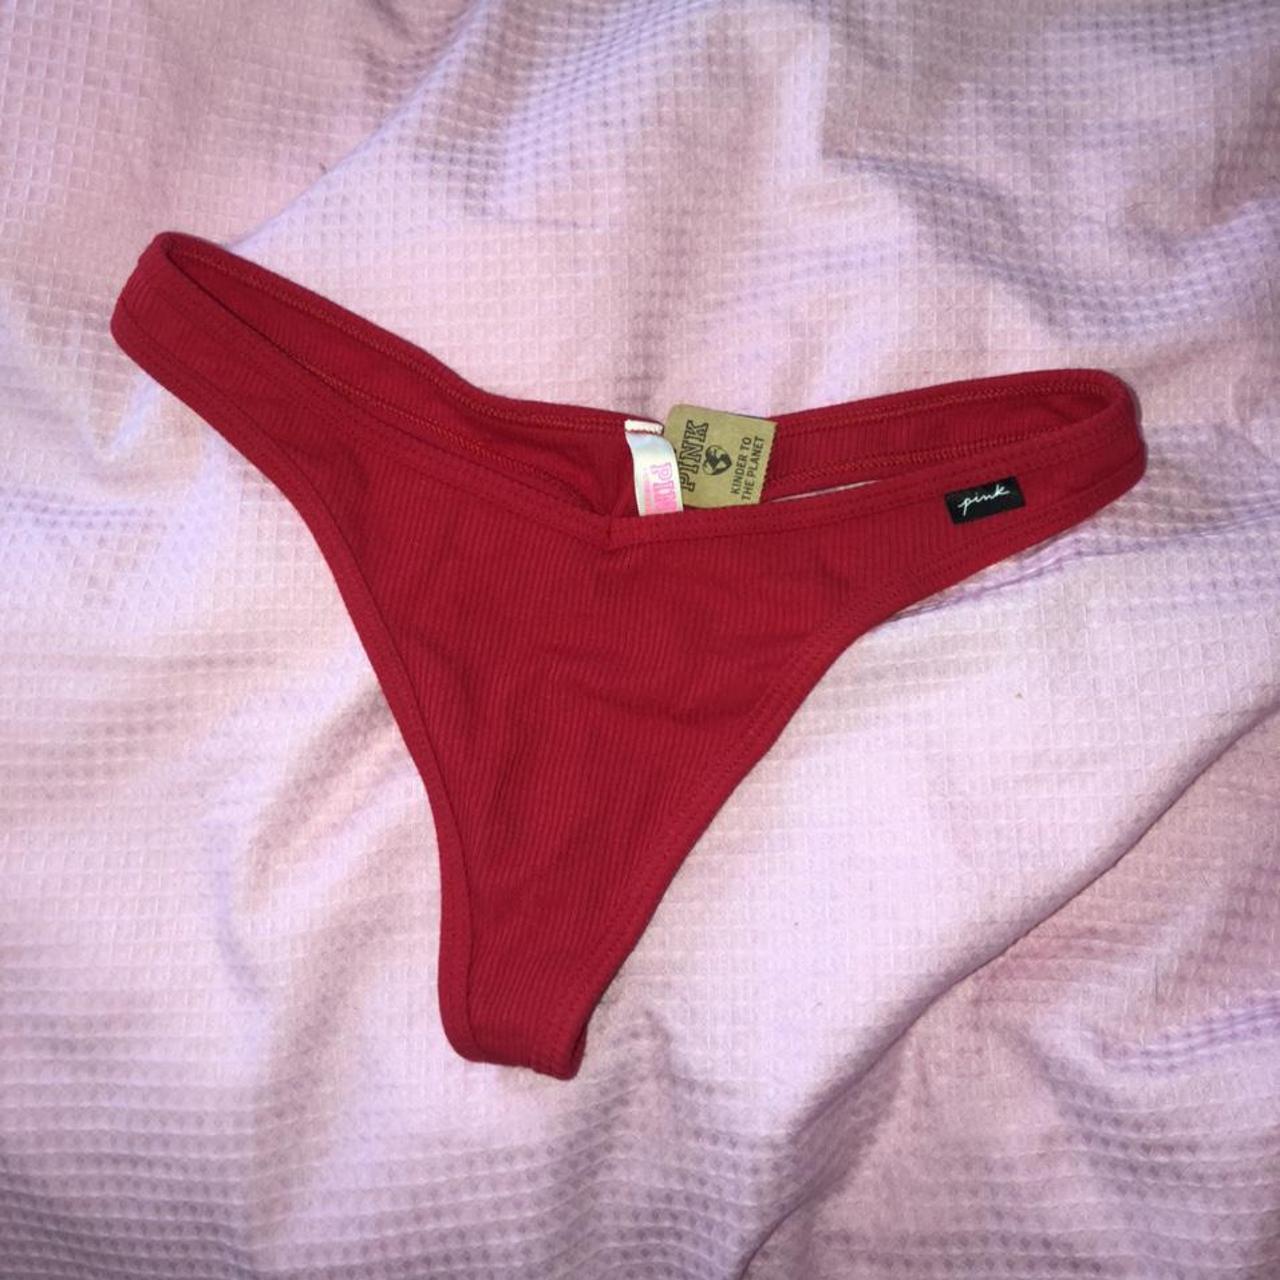 victoria’s secret pink thong bottom underwear in red